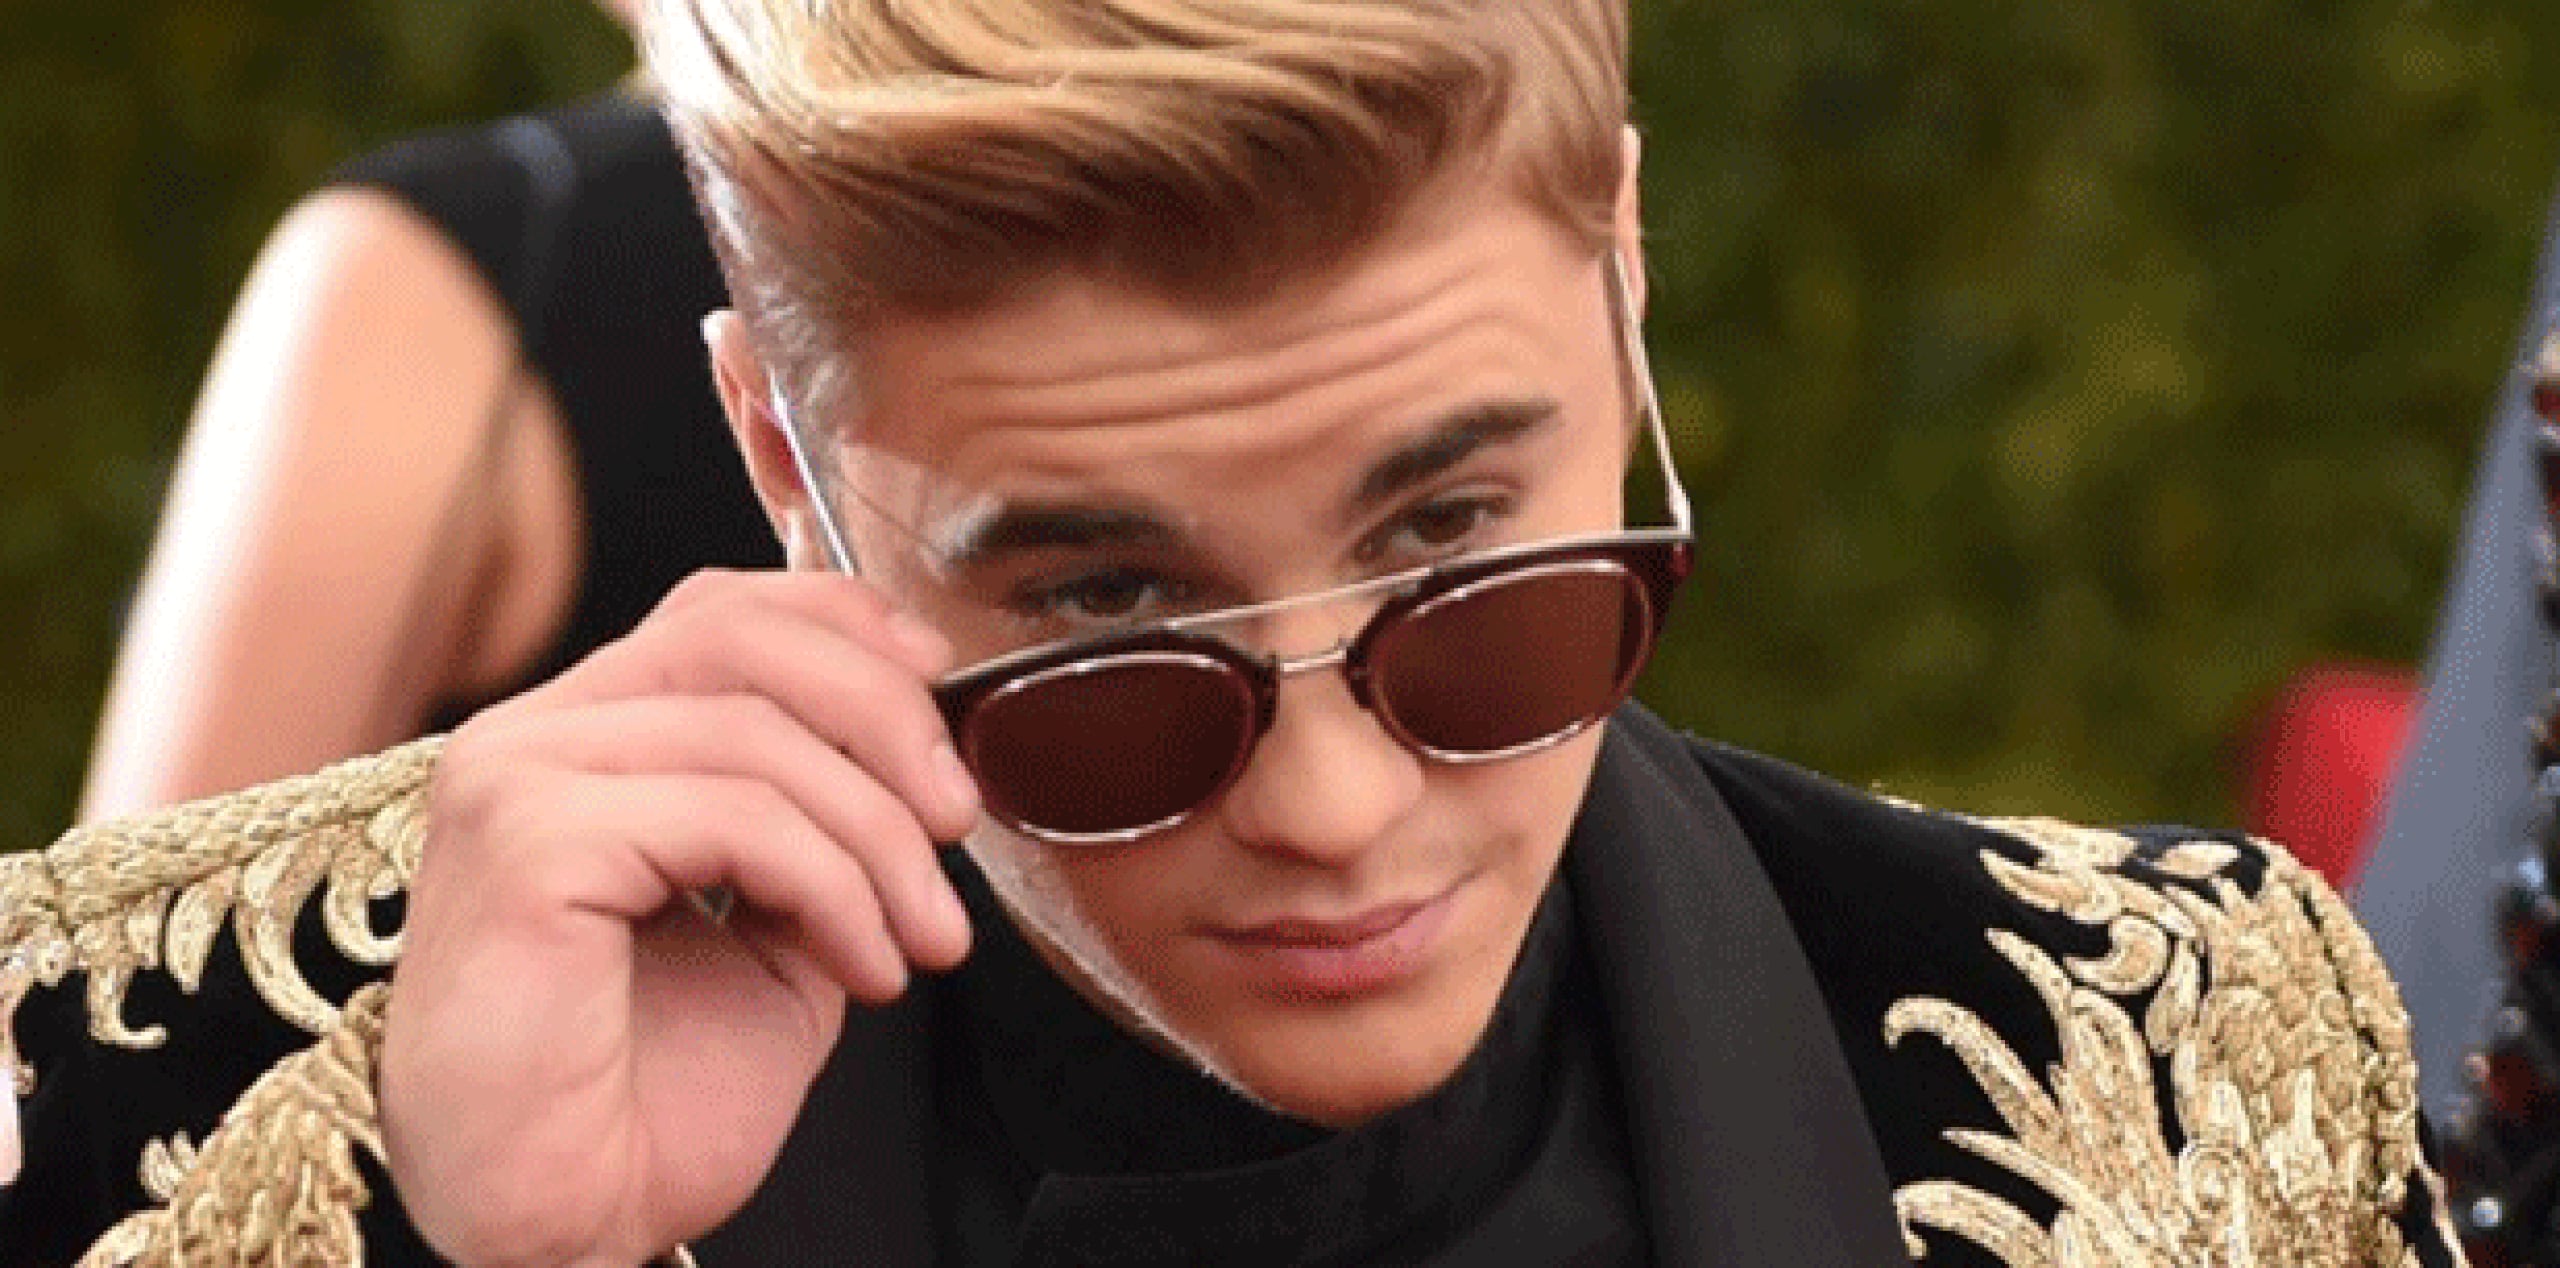 Los cargos formales contra Bieber son por daños y lesiones, delitos por los que el código penal argentino prevé penas de entre uno y seis años de prisión. La AP intentó contactar a los abogados del fotógrafo, sin éxito hasta el momento. (Archivo)